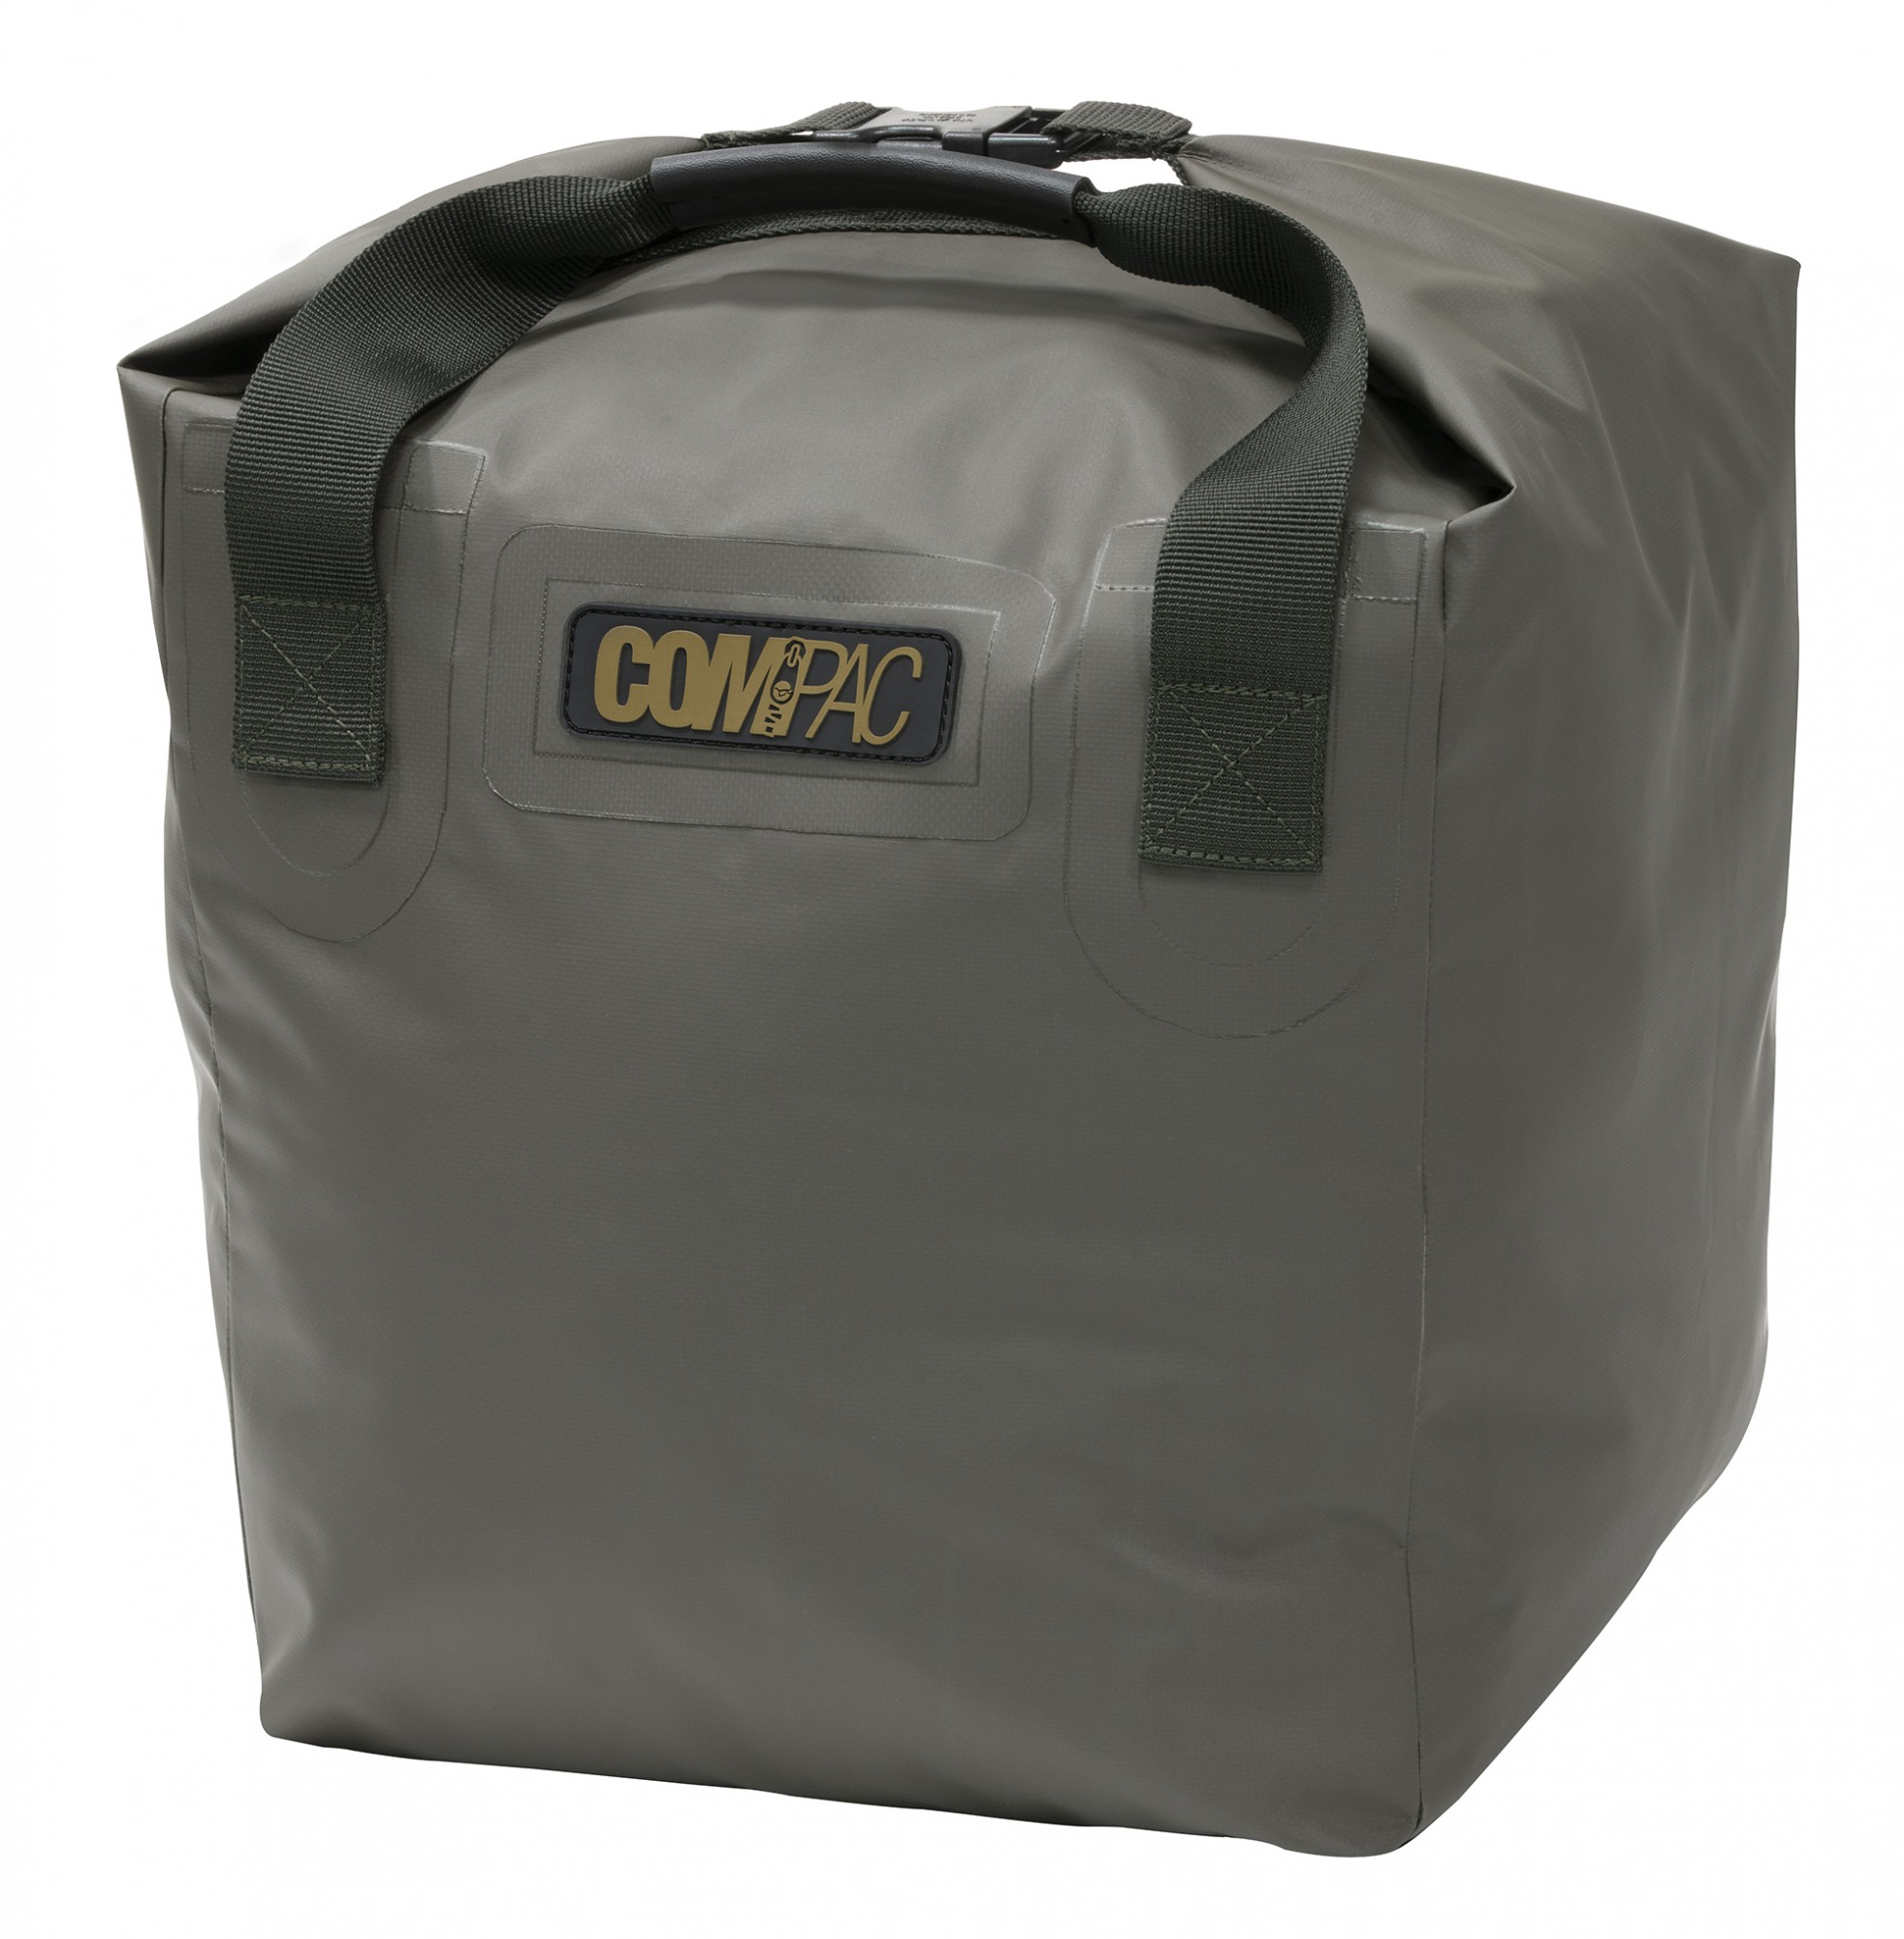 Korda Compac Dry Bag Small